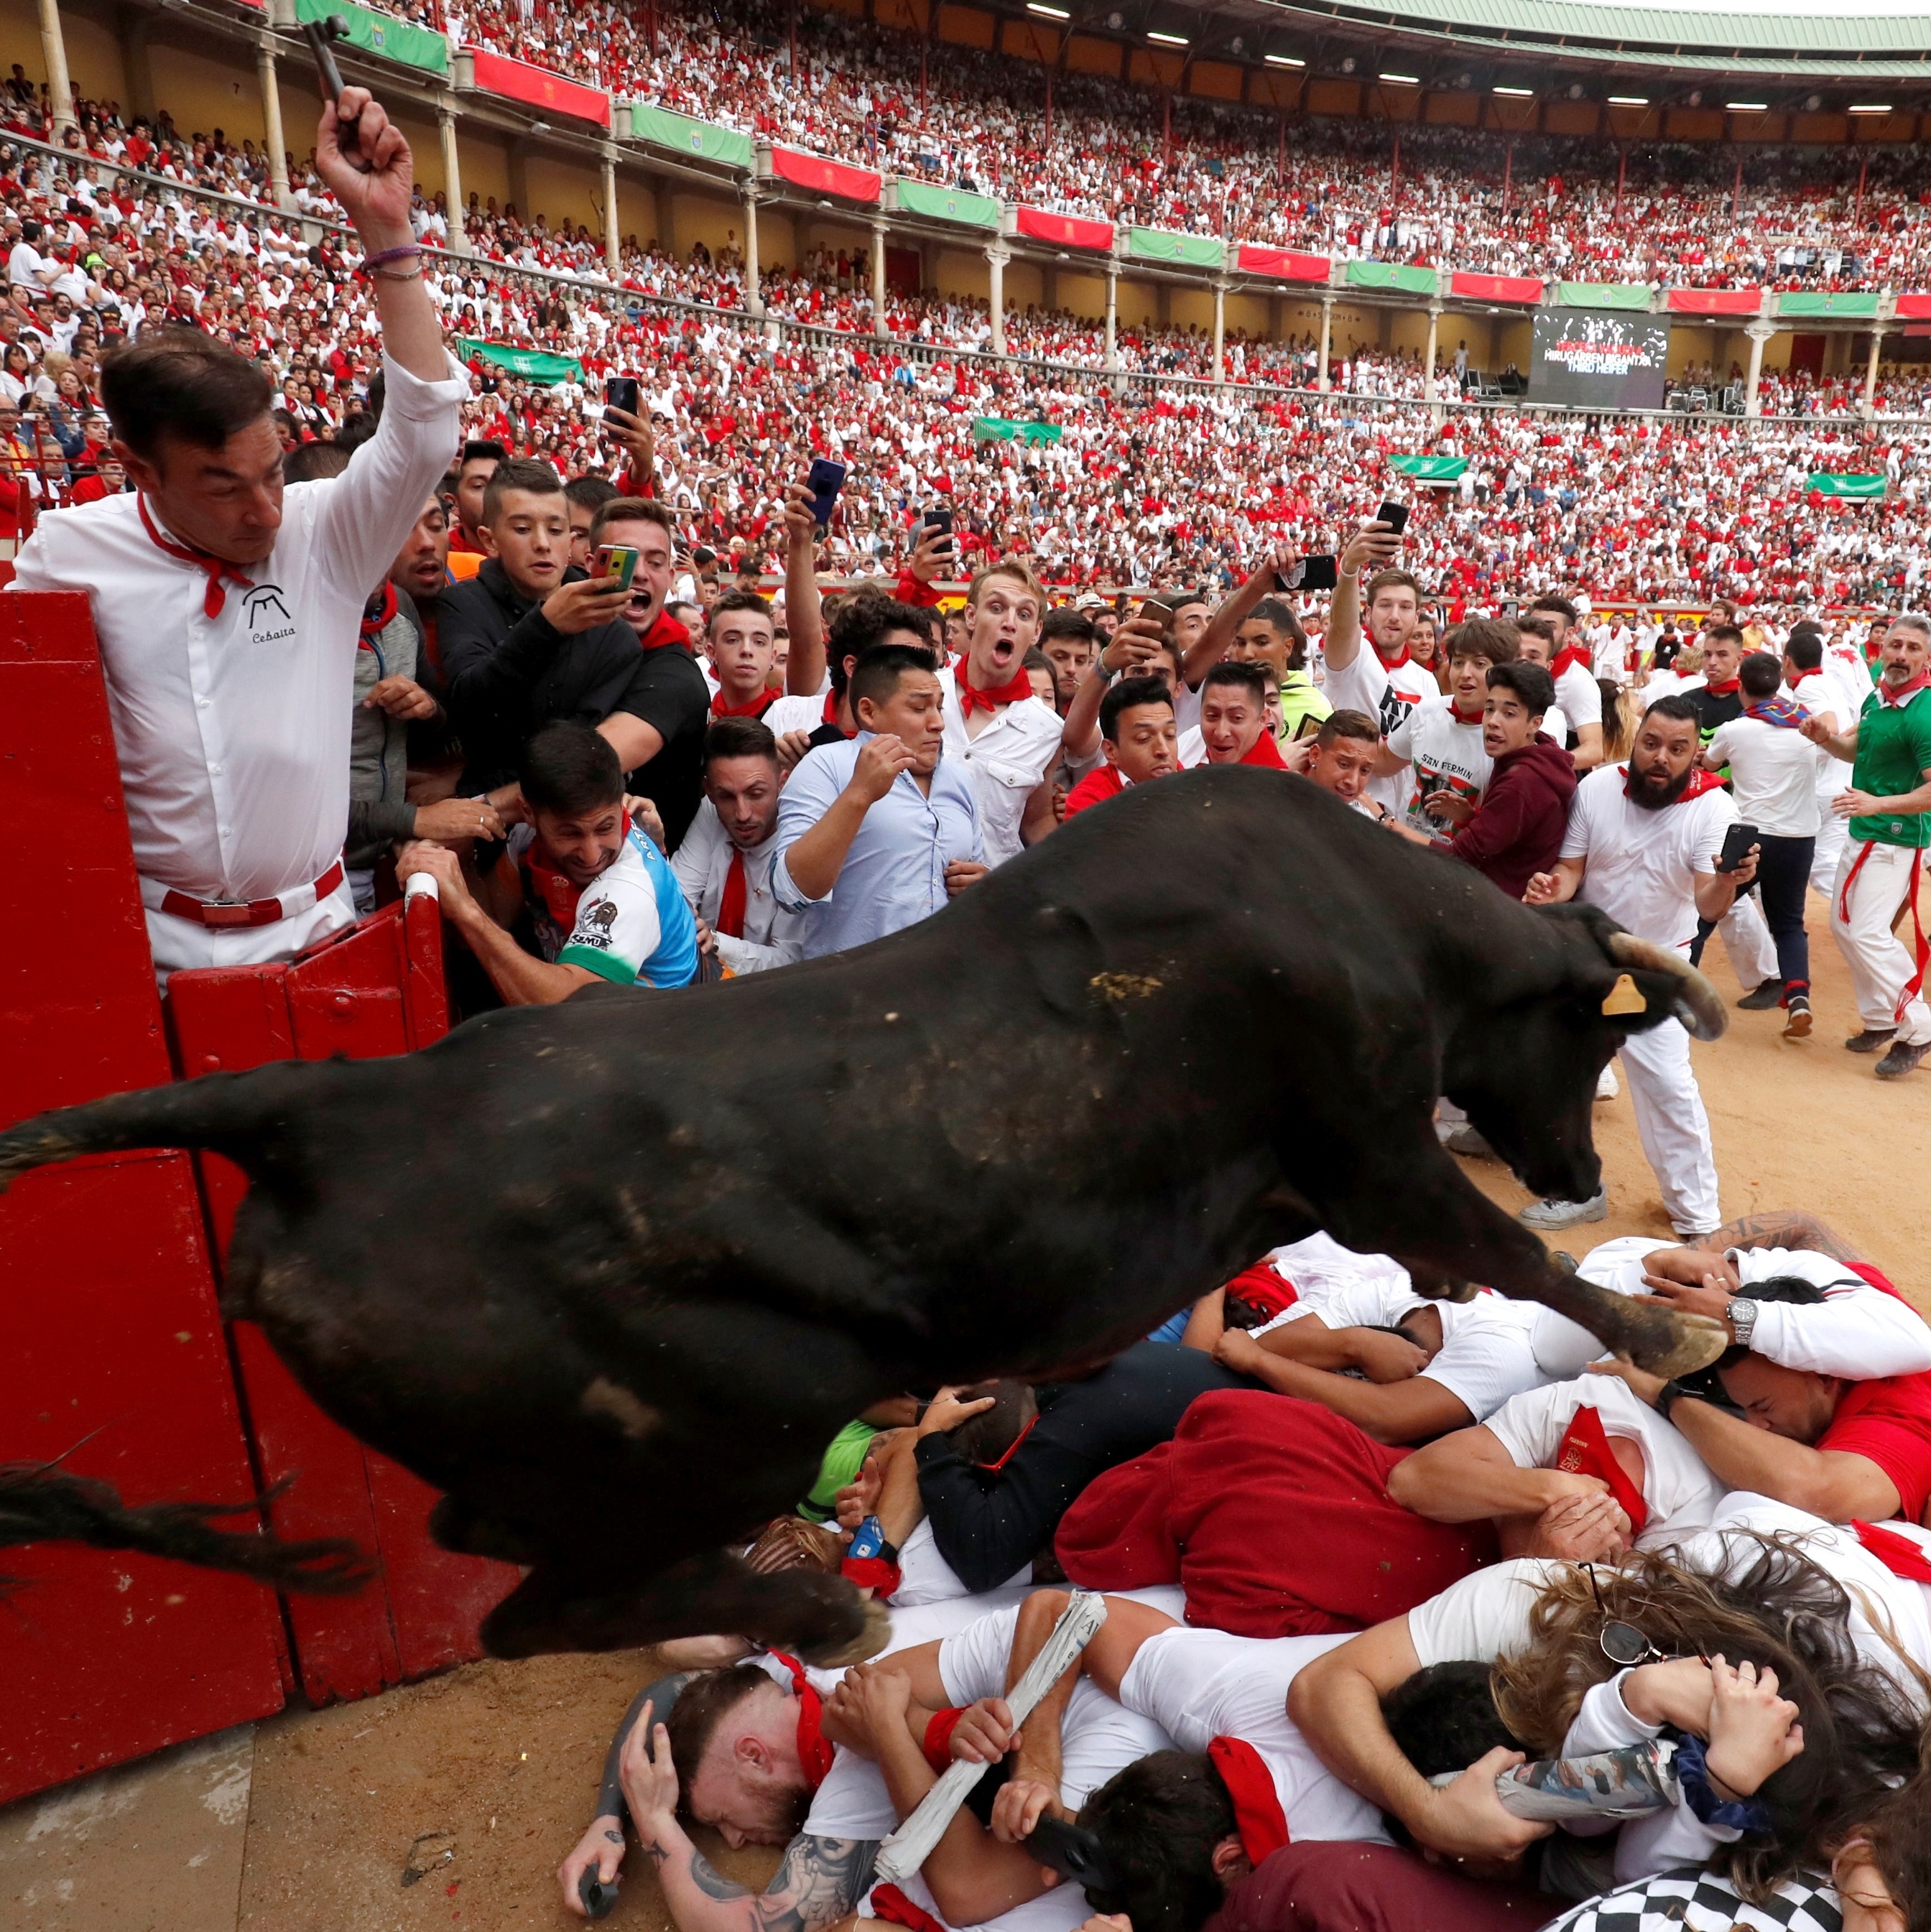 Festa de São Firmino agita cidade da Espanha com vinho e corrida de touros  - Fotos - UOL Notícias